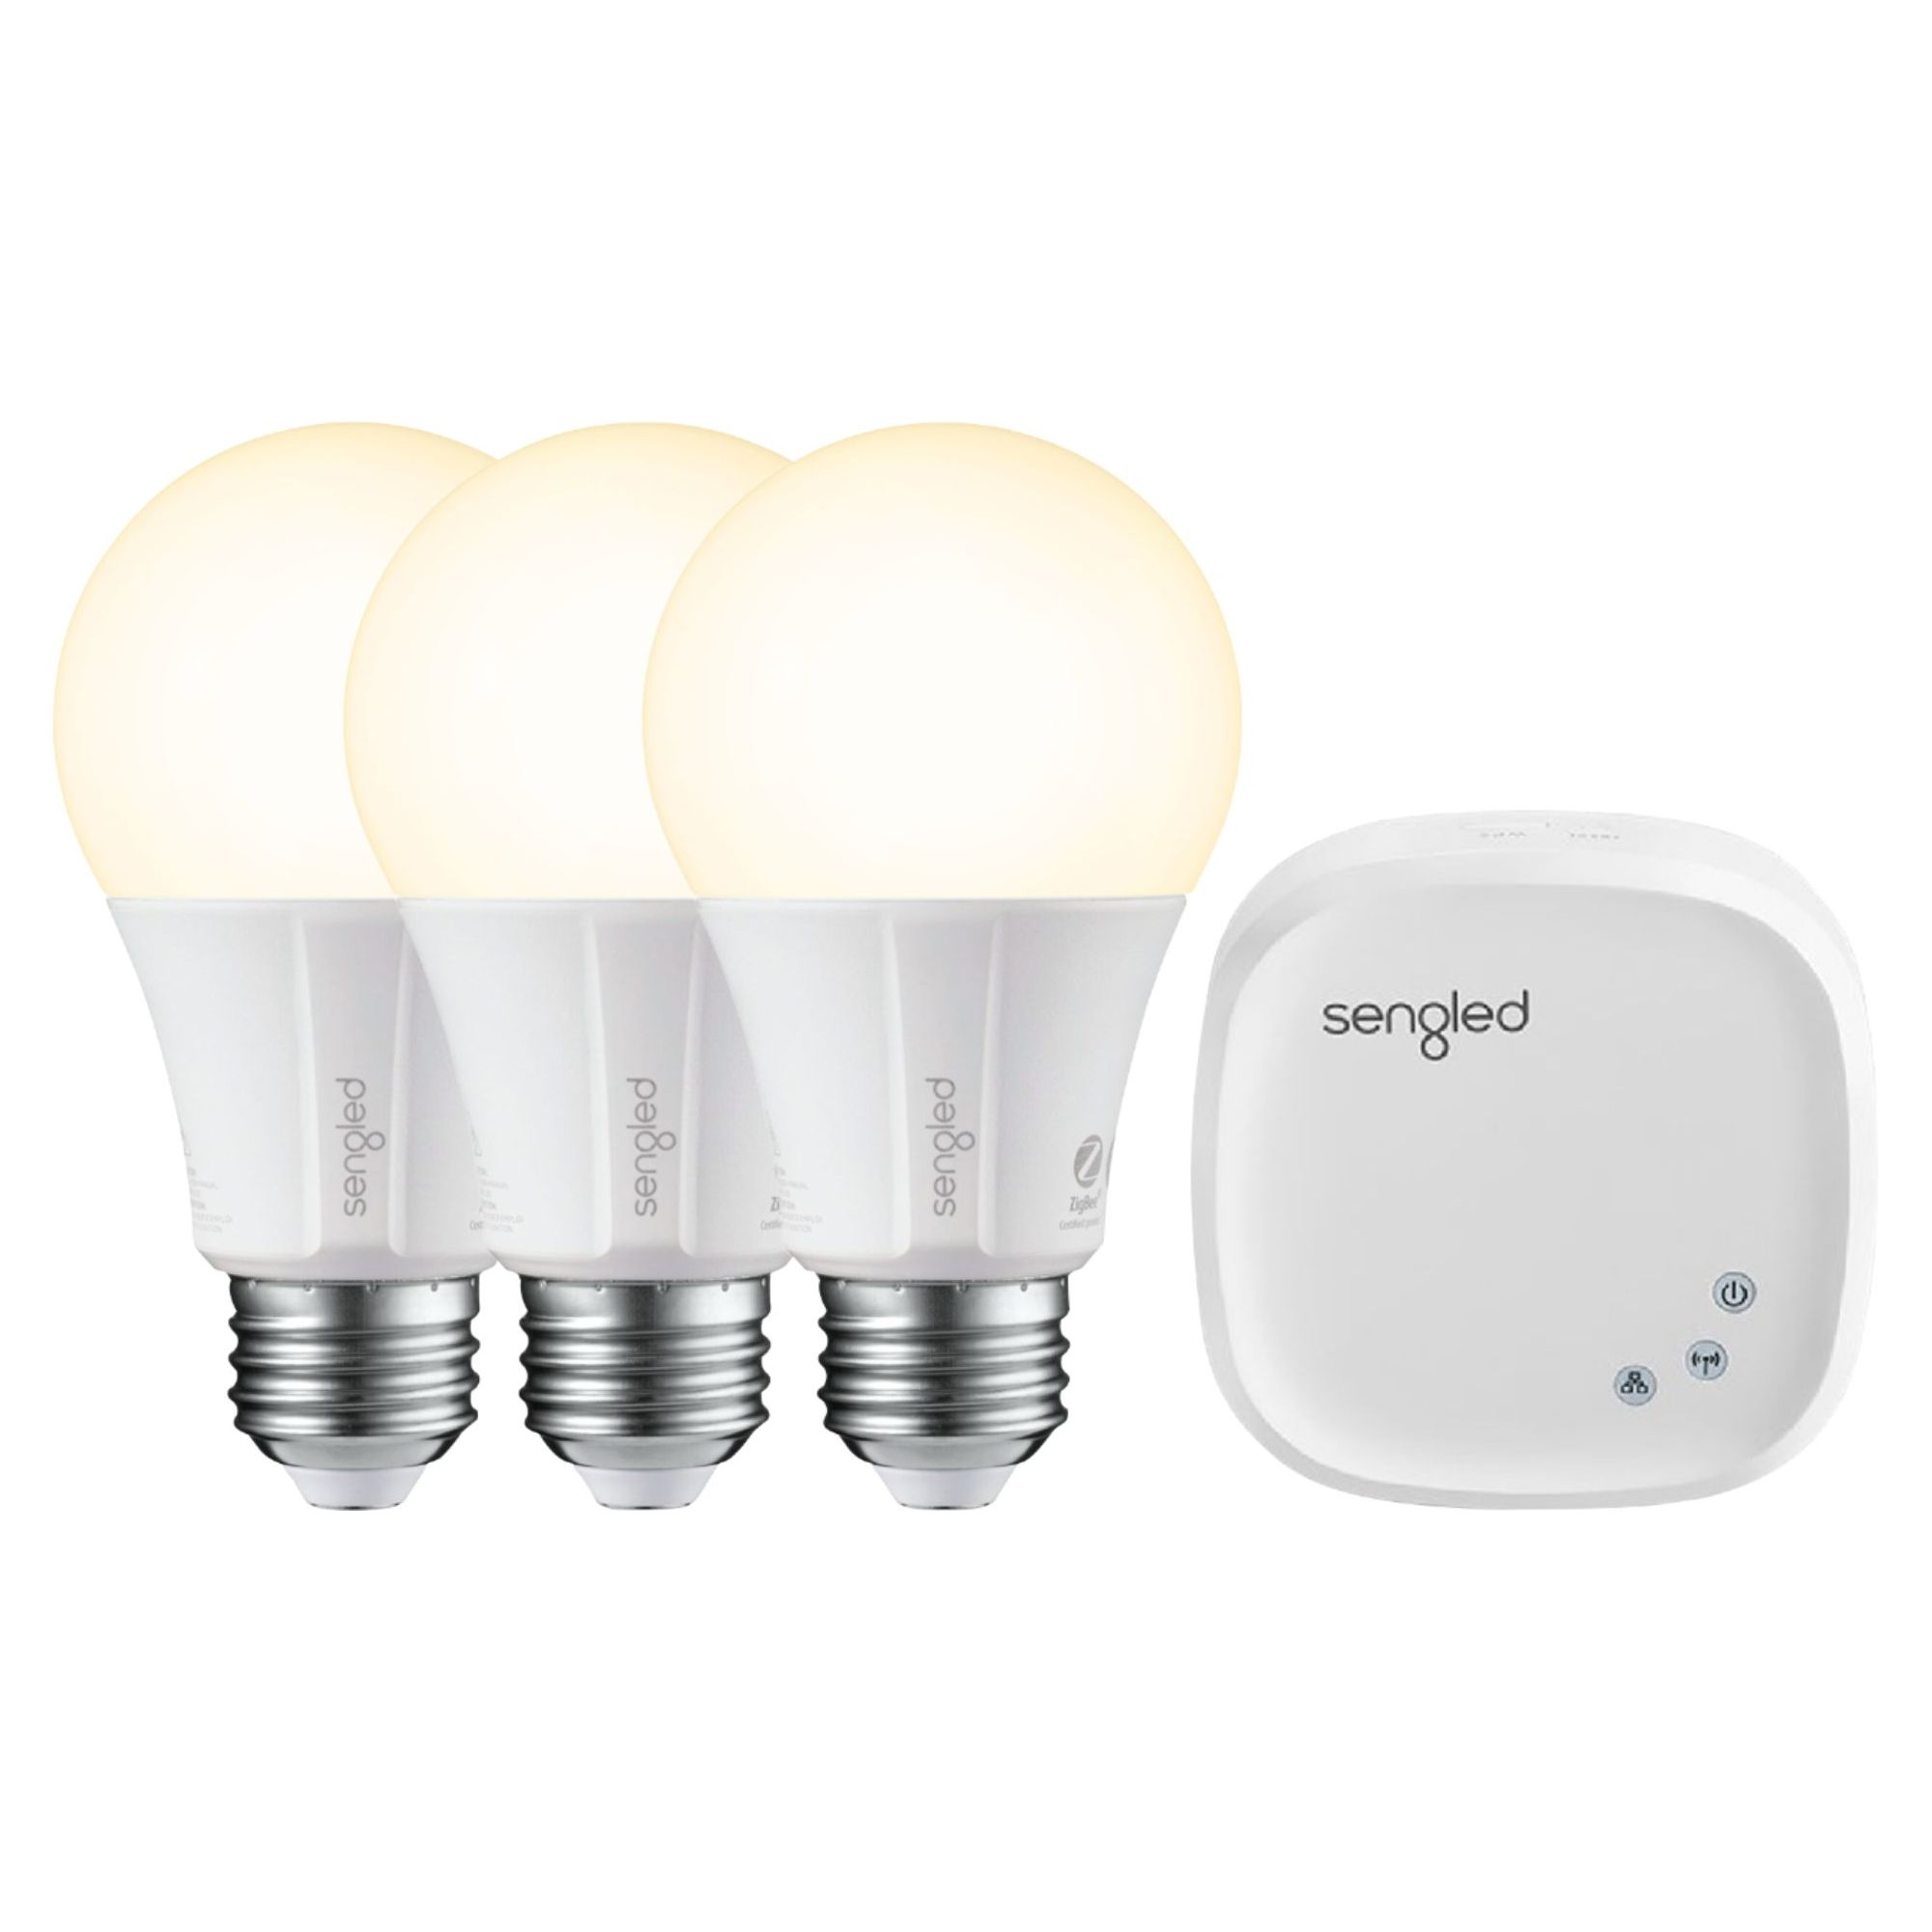 Sengled Smart LED A19 Starter Kit 3 Bulbs 1 Hub White Only - image 1 of 4